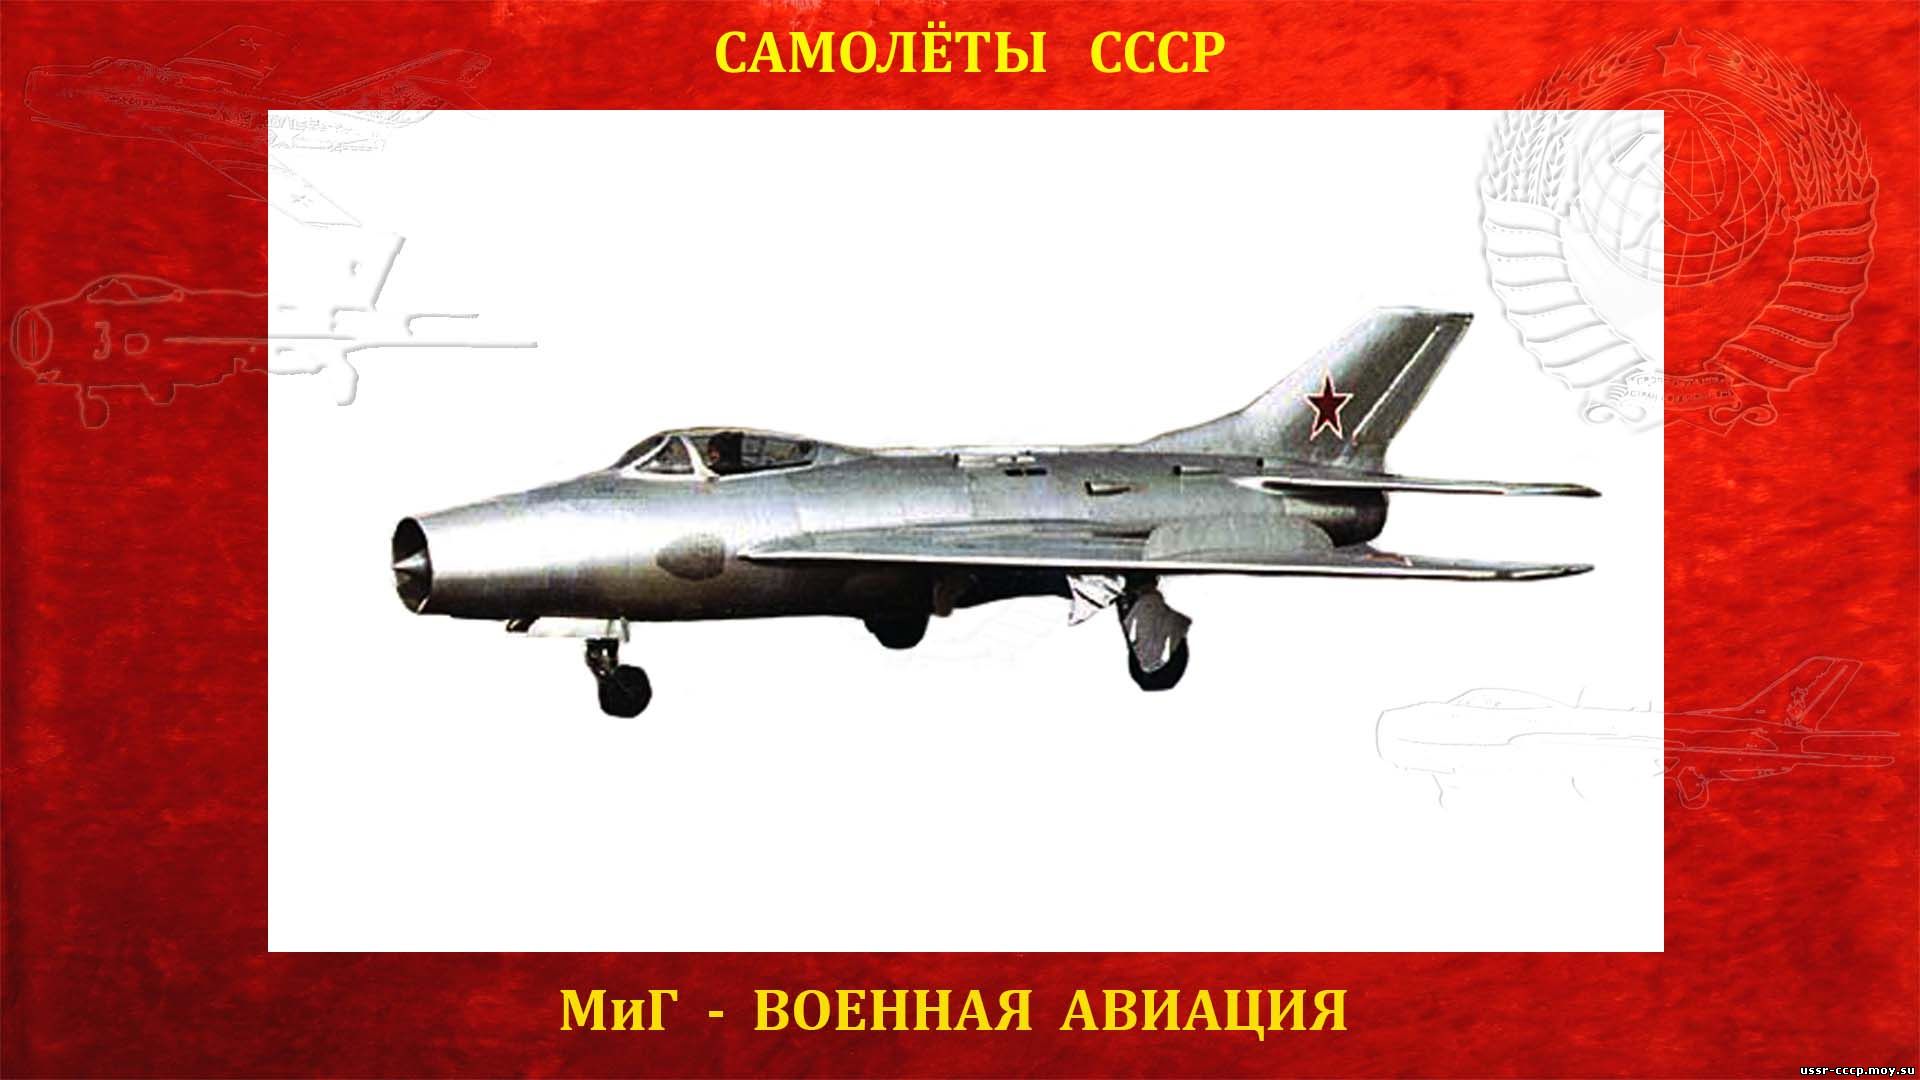 МиГ-19 (СМ-12) — самолет с улучшенной аэродинамикой (полное повествование)